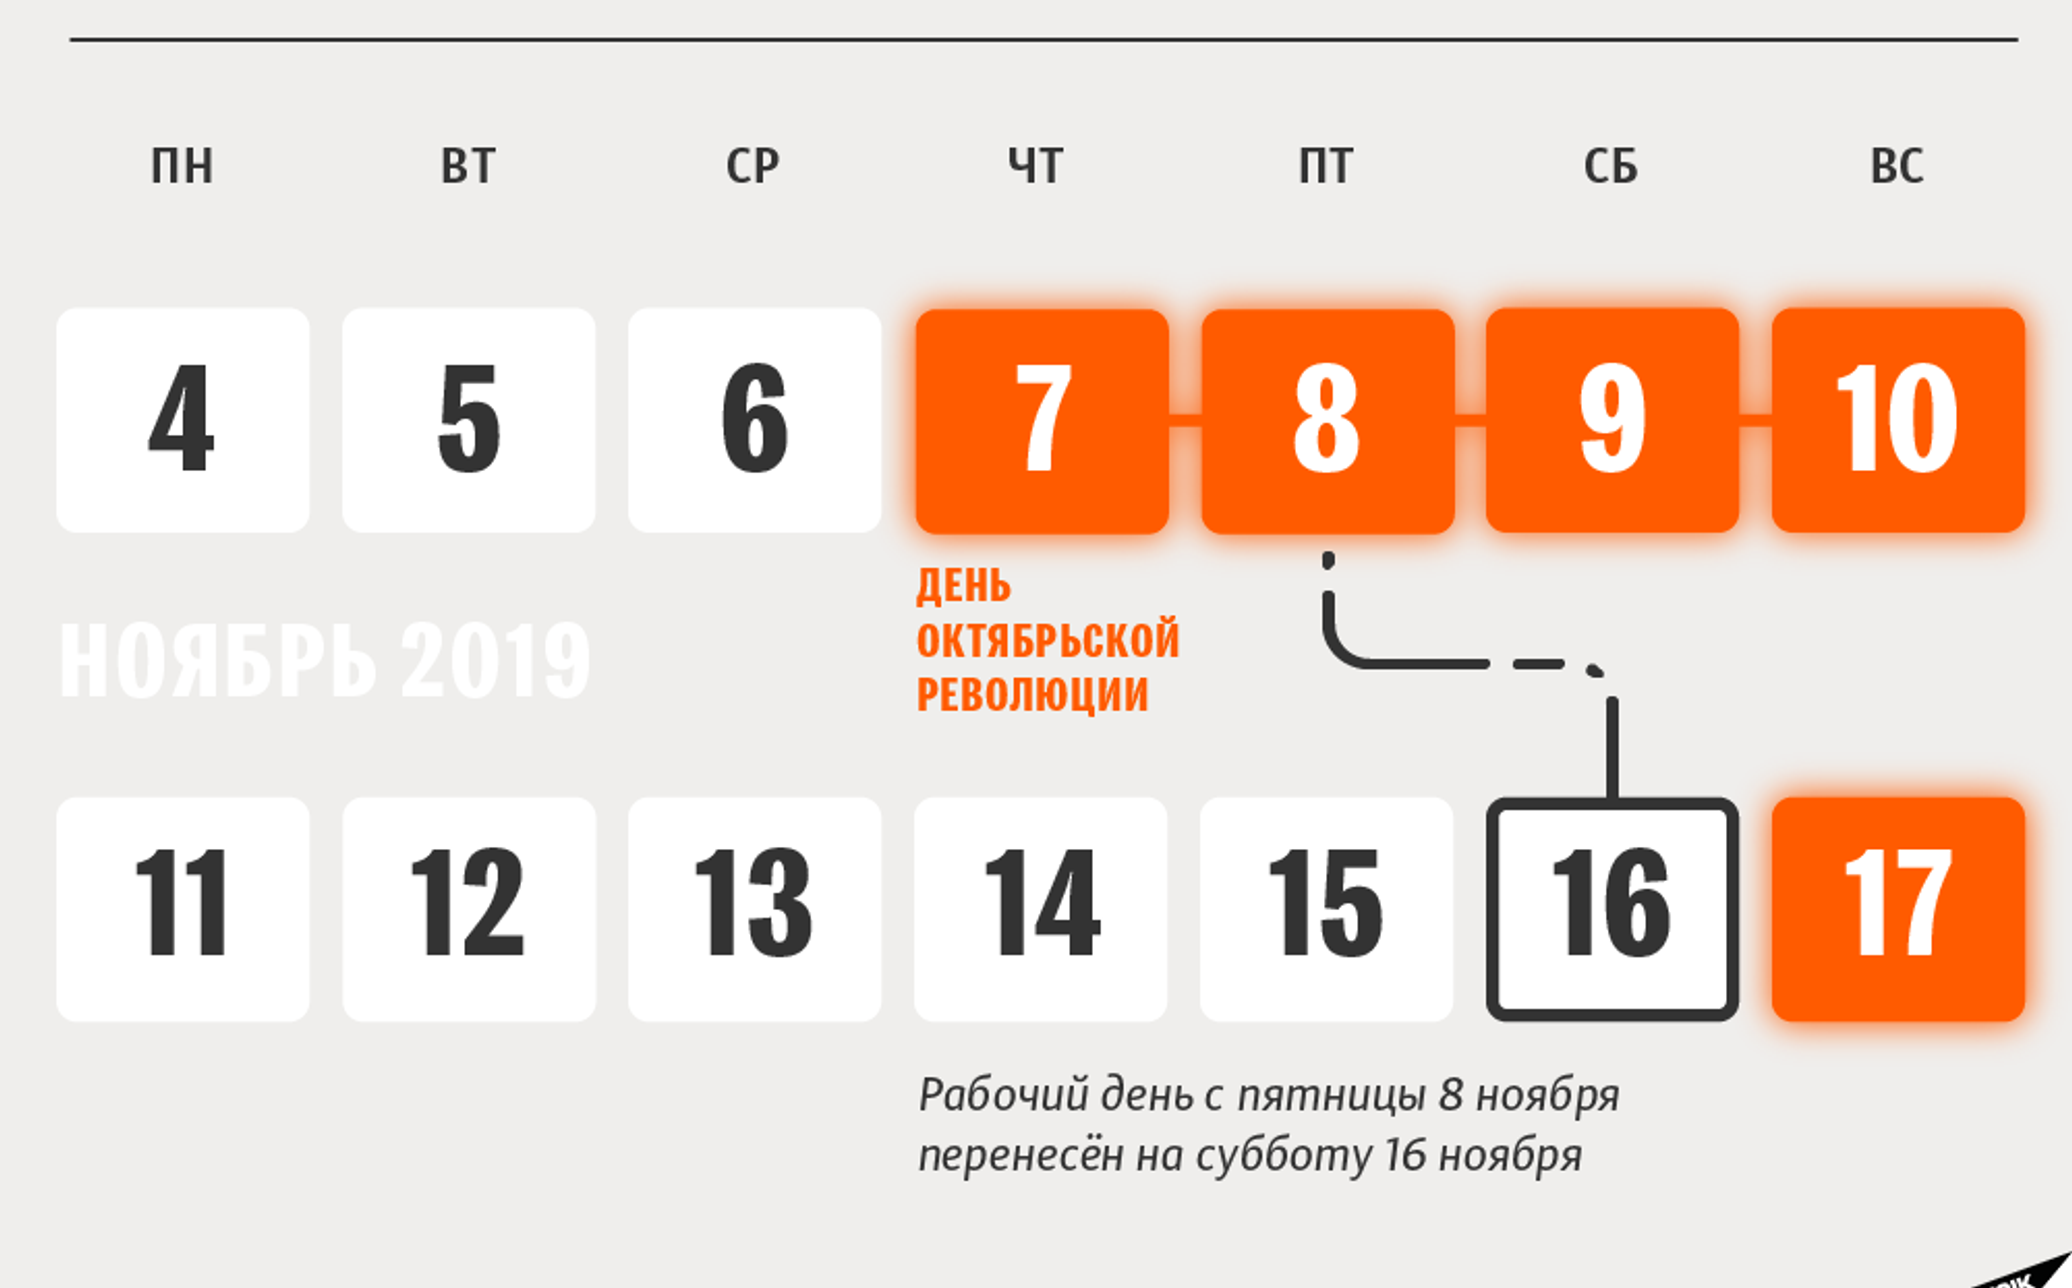 4 нерабочих дня. Праздники в ноябре. Выходные дни в Беларуси. Выходные на ноябрьские праздники. Праздники в ноябре 2019.